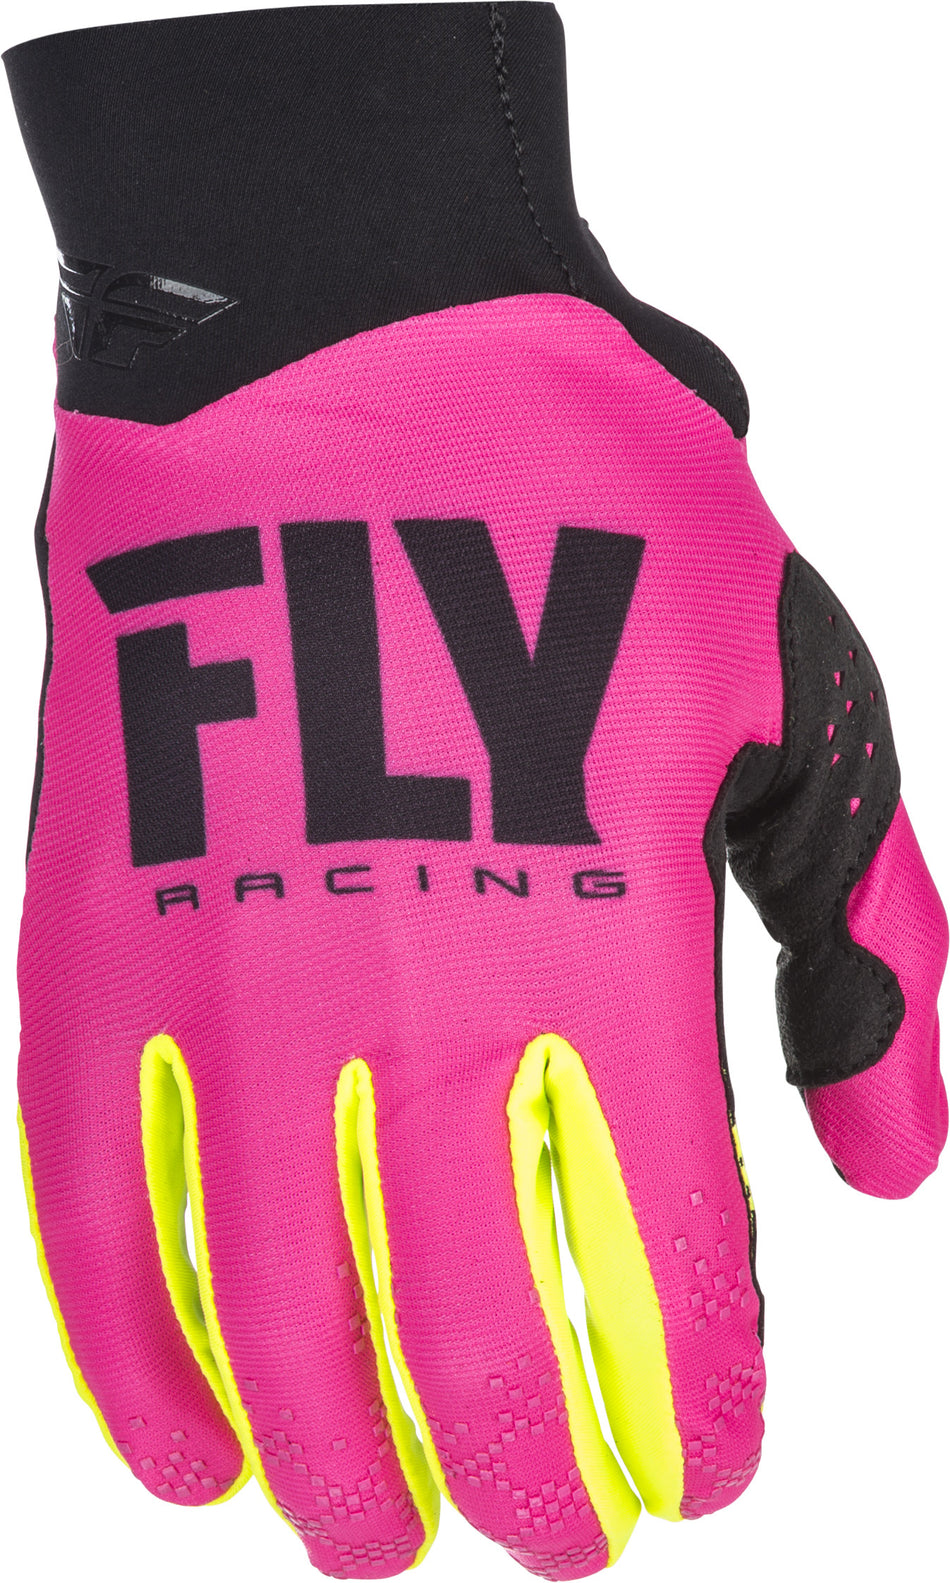 FLY RACING Pro Lite Gloves Neon Pink/Hi-Vis Sz 6 371-81706